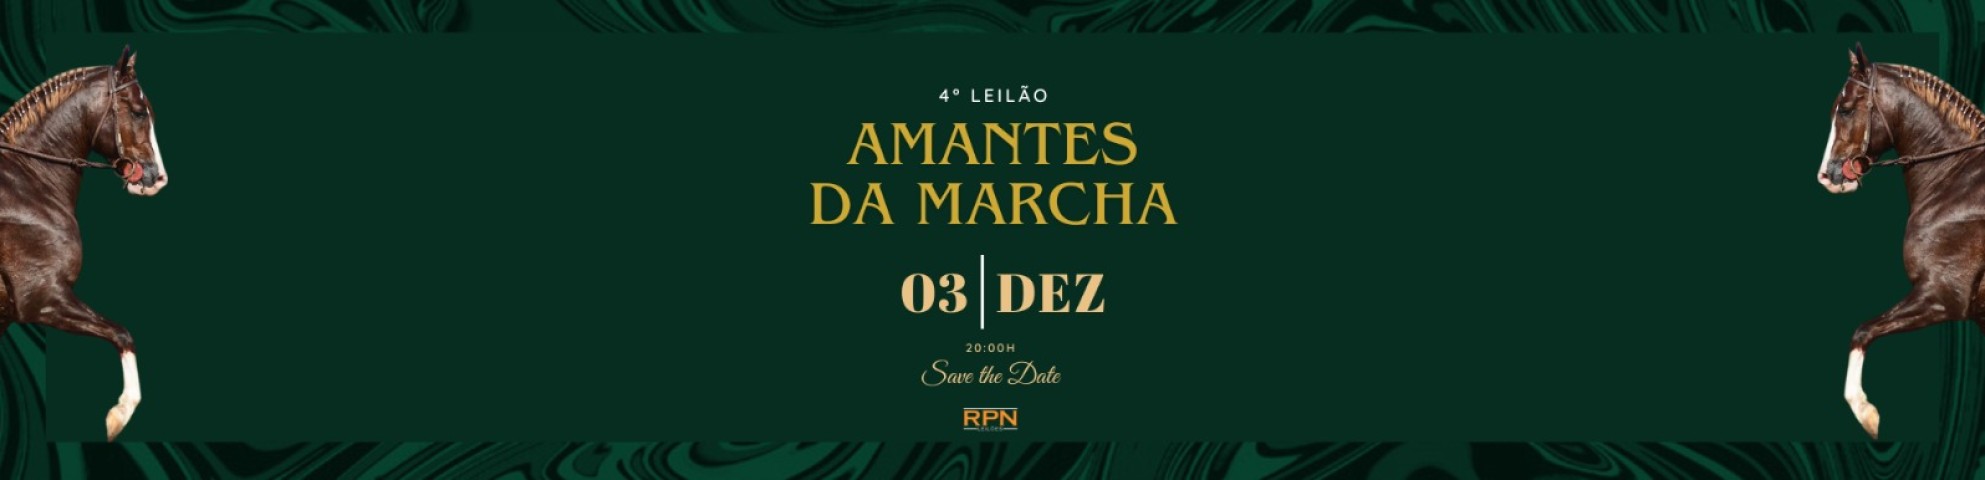 Slide 4º LEILÃO AMANTES DA MARCHA (LEILÃO VIRTUAL)